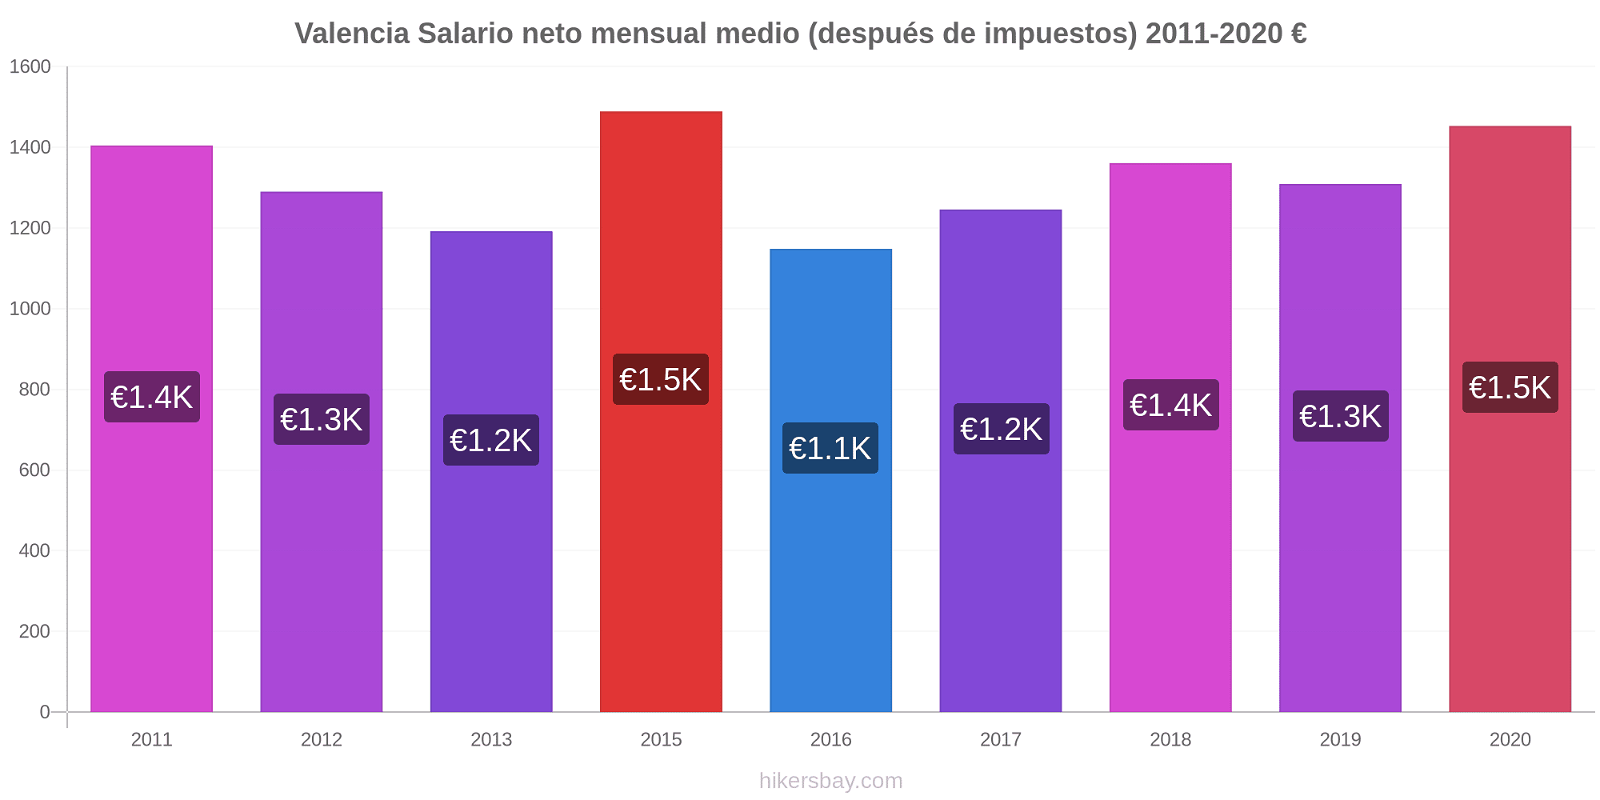 Valencia cambios de precios Promedio mensual del salario neto (después de pagar impuestos) hikersbay.com